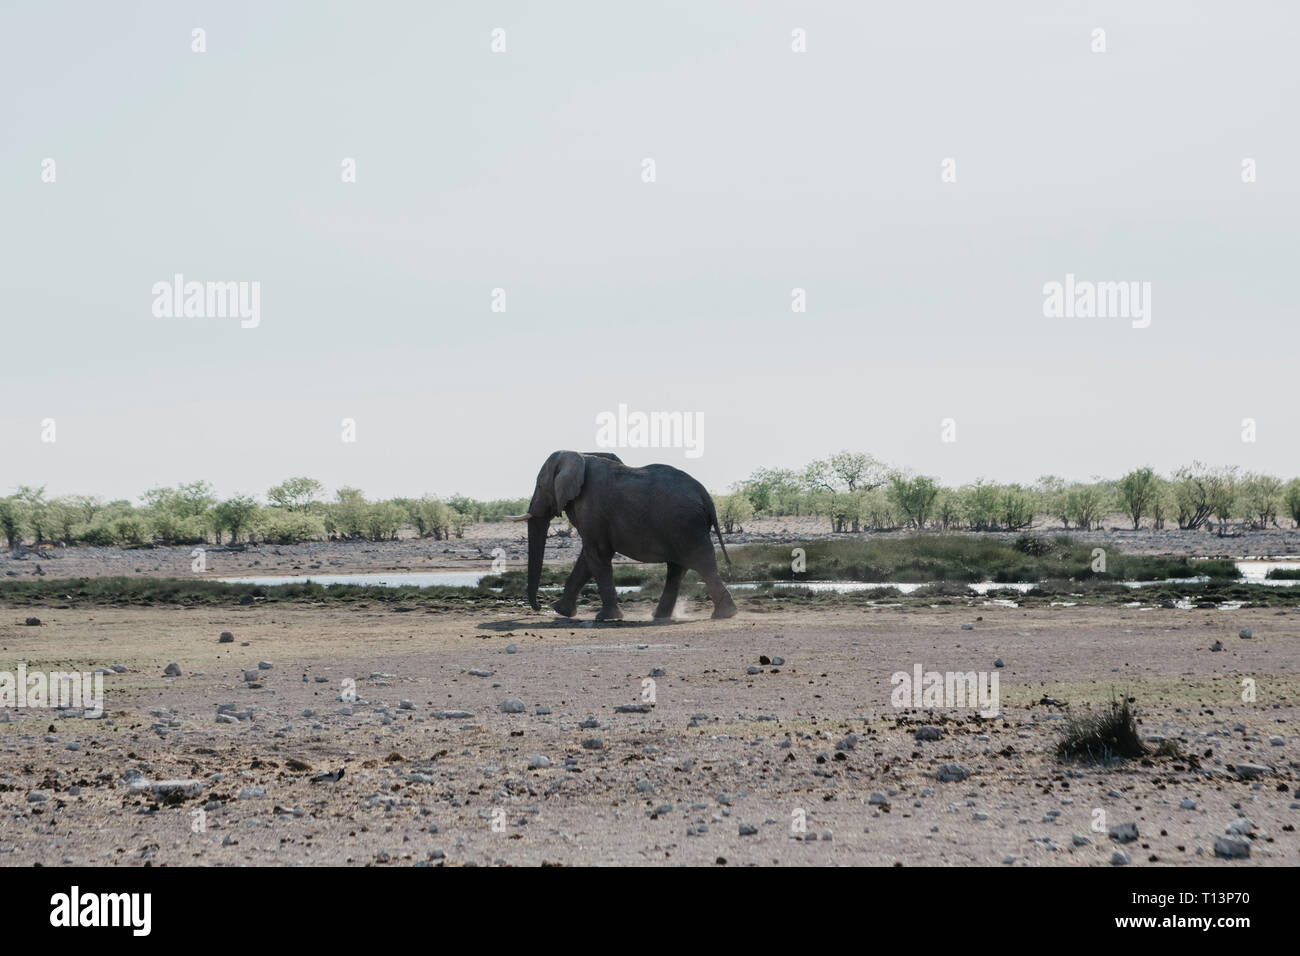 Namibia, Etosha National Park, African elephant at a waterhole Stock Photo